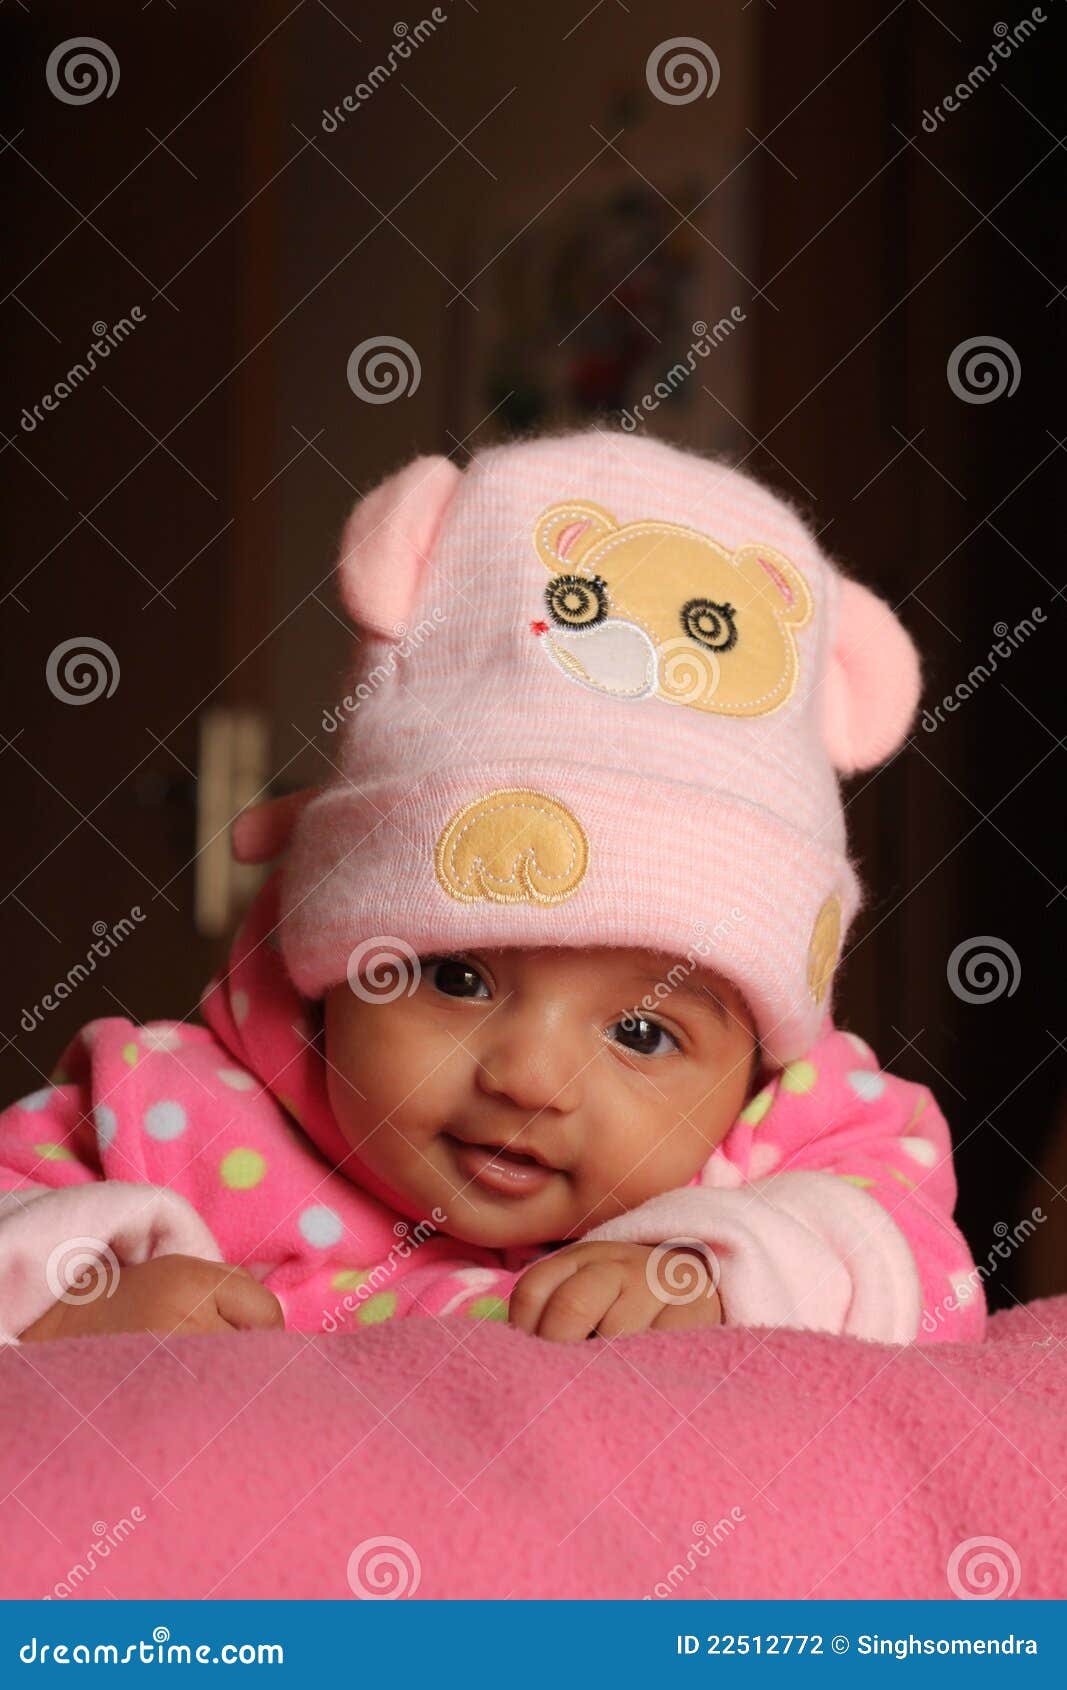 innocent asian baby girl in pink winter cap